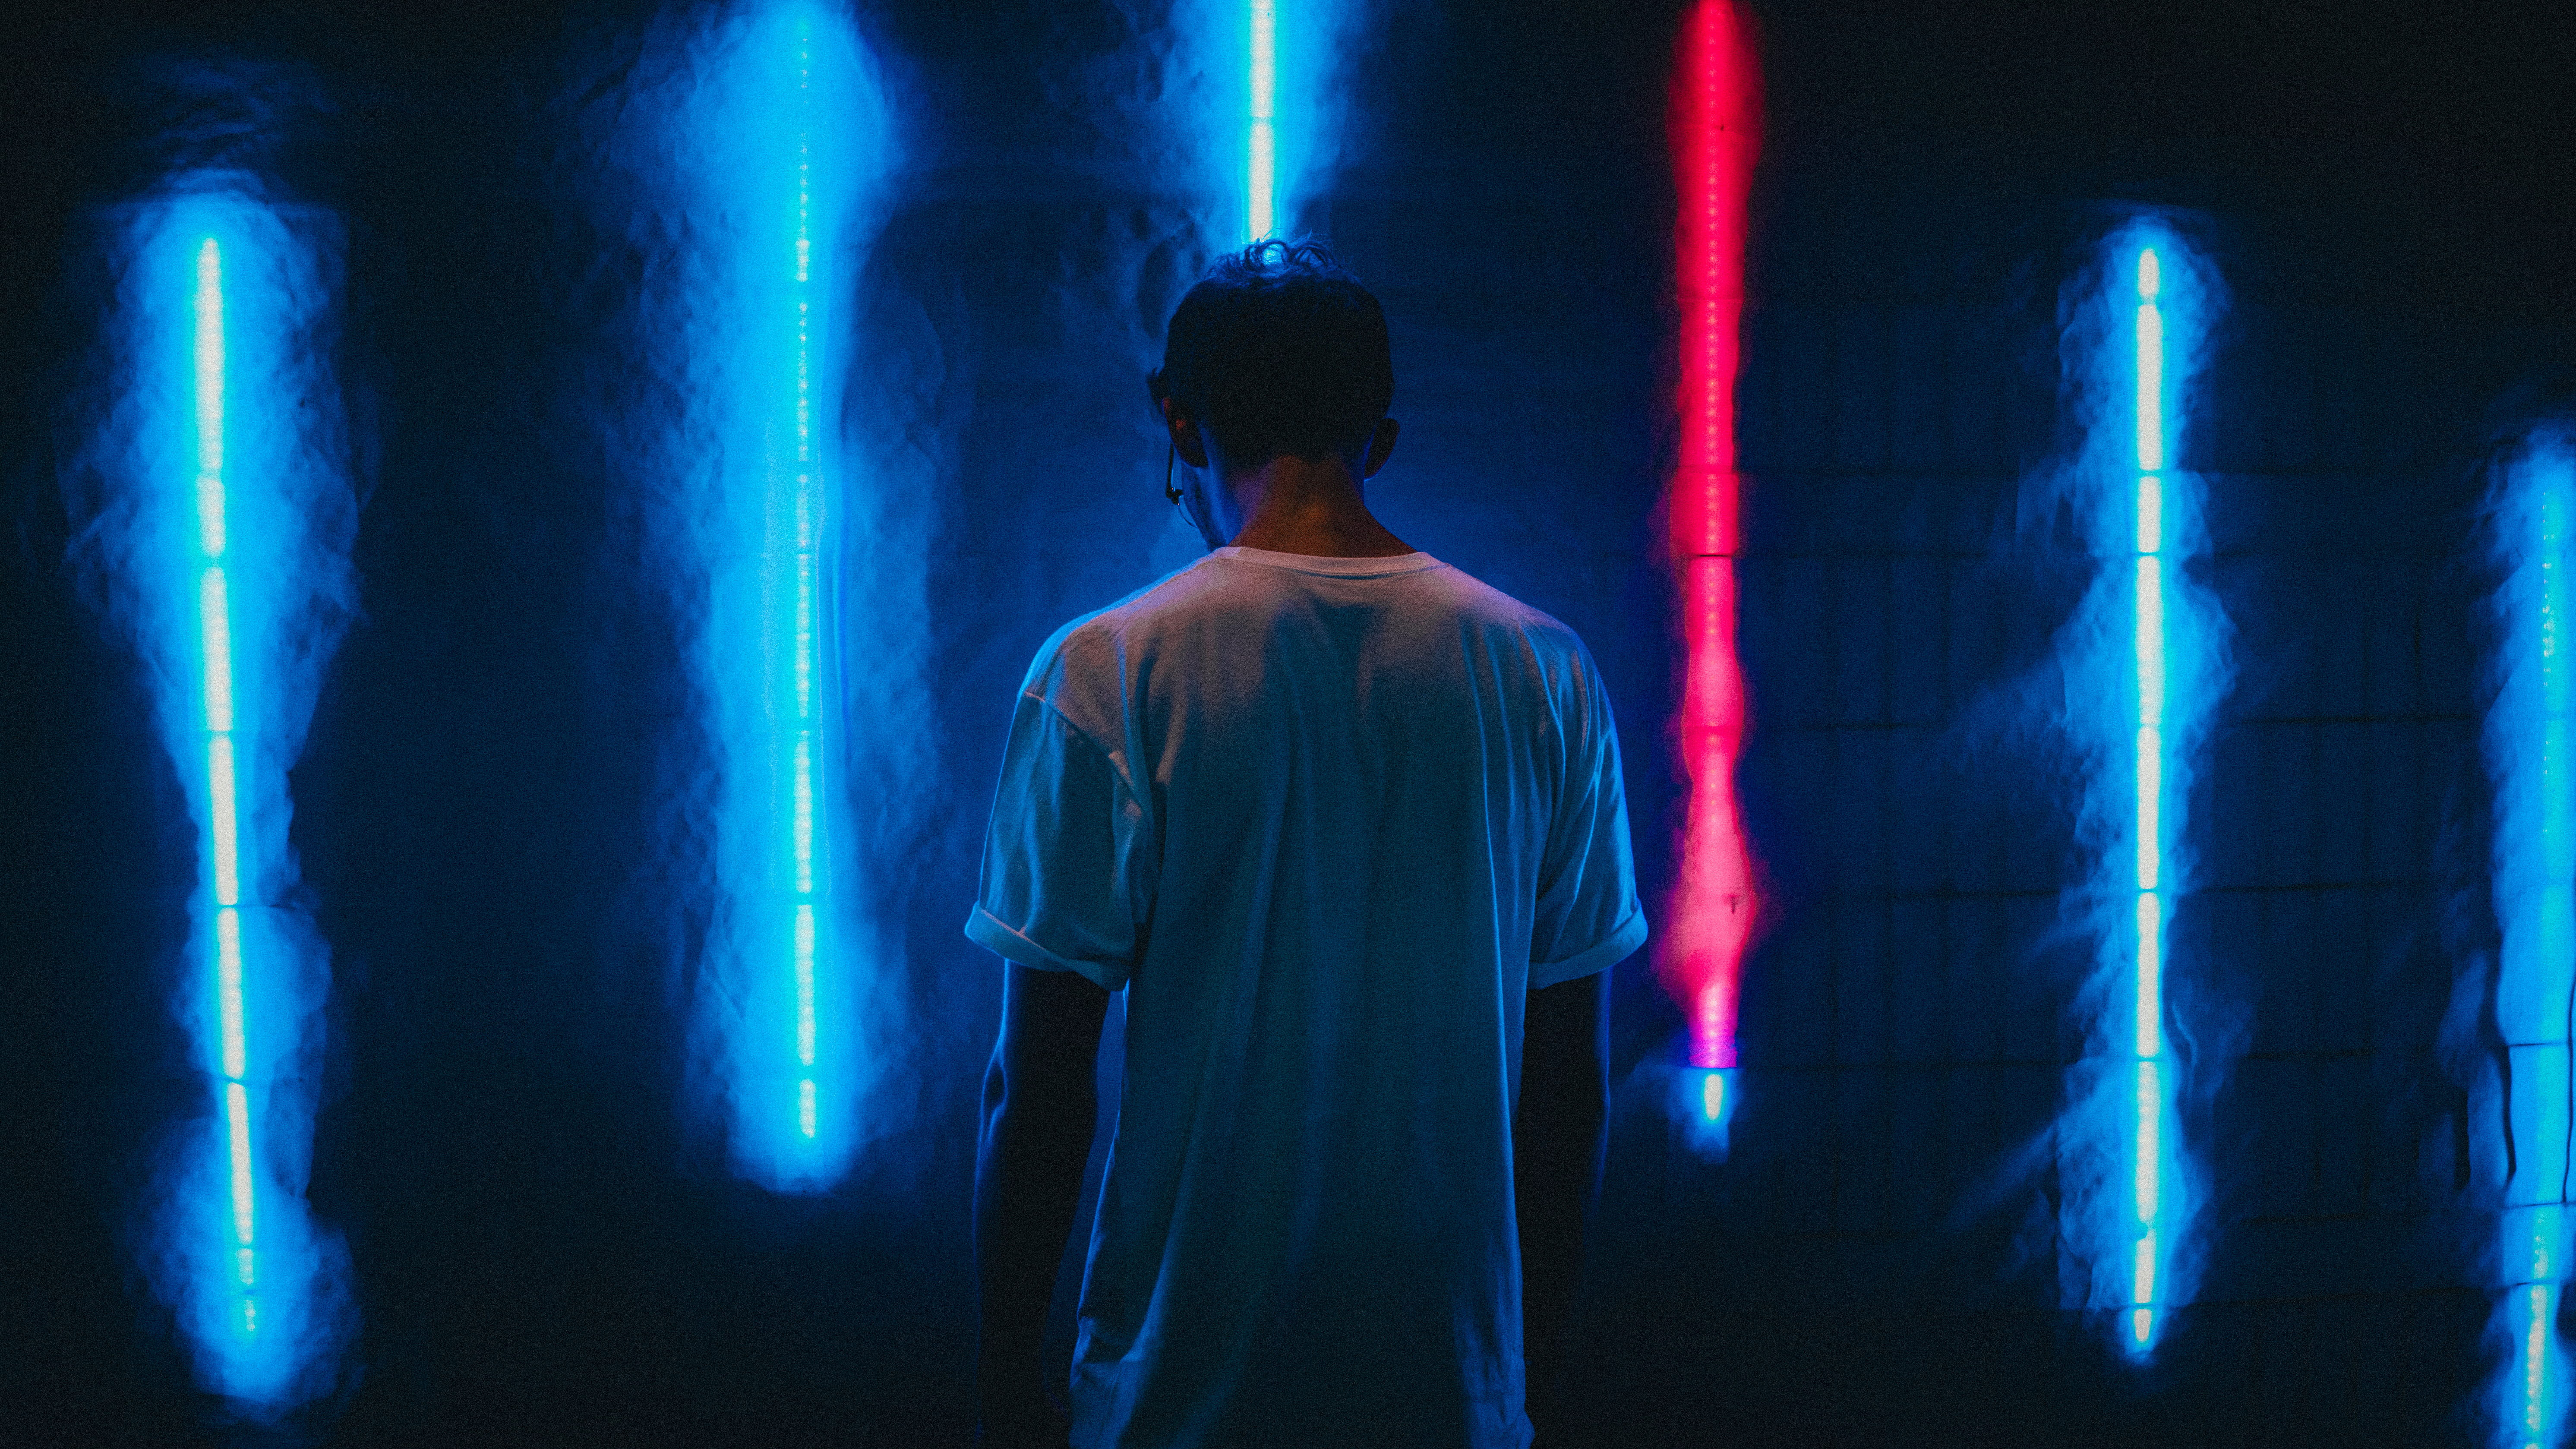 Wallpaper Man Standing Near Blue Led Strips, Night, Light, light, Neon